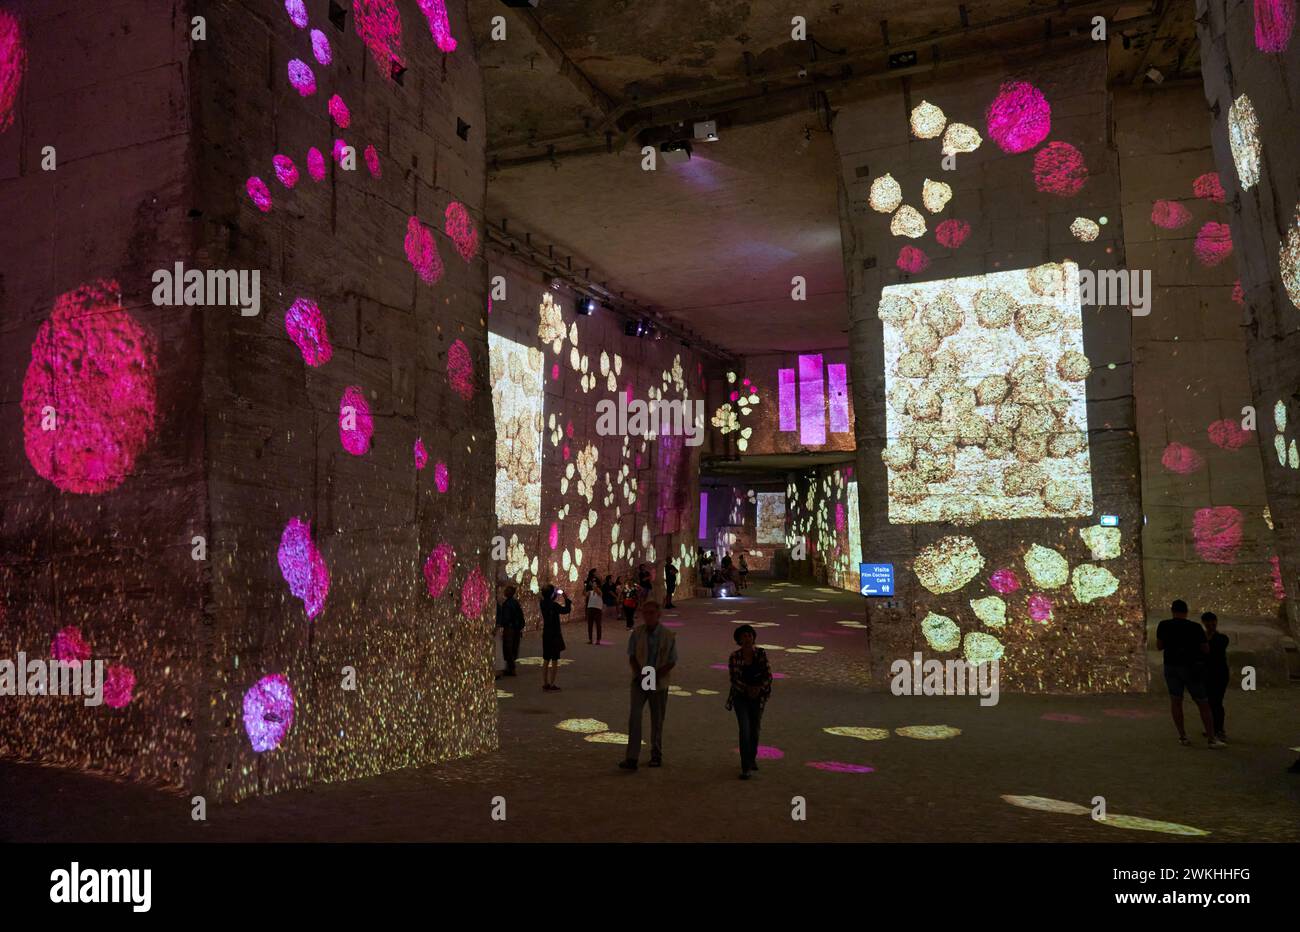 Carrières de Lumiéres, Centre d'art numérique projetant des expositions immersives, Les Baux-de-Provence, Bouches-du-Rhône, Provence-Alpes-Côte d’Azur Stock Photo